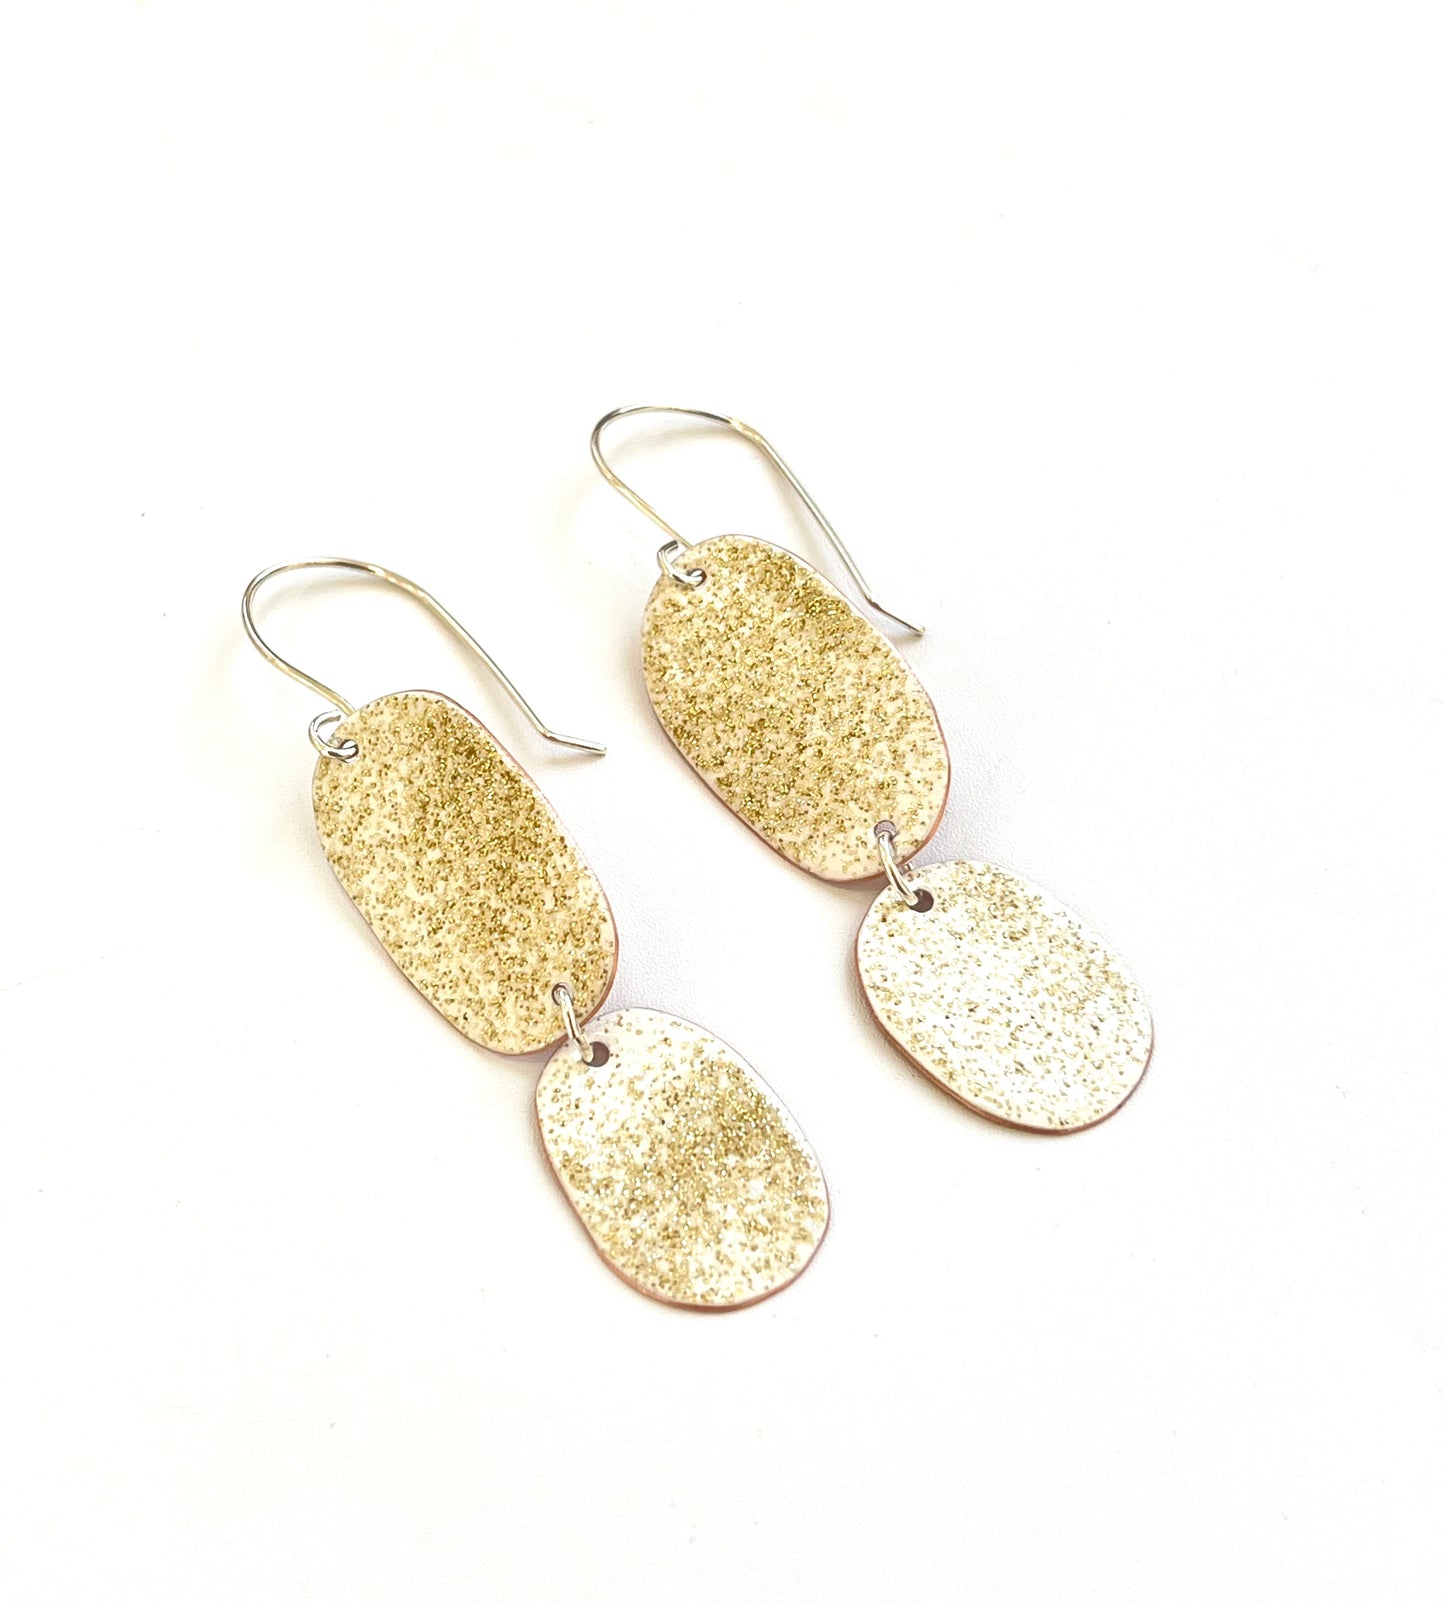 Double Drop Earrings - White, Gold Glitter